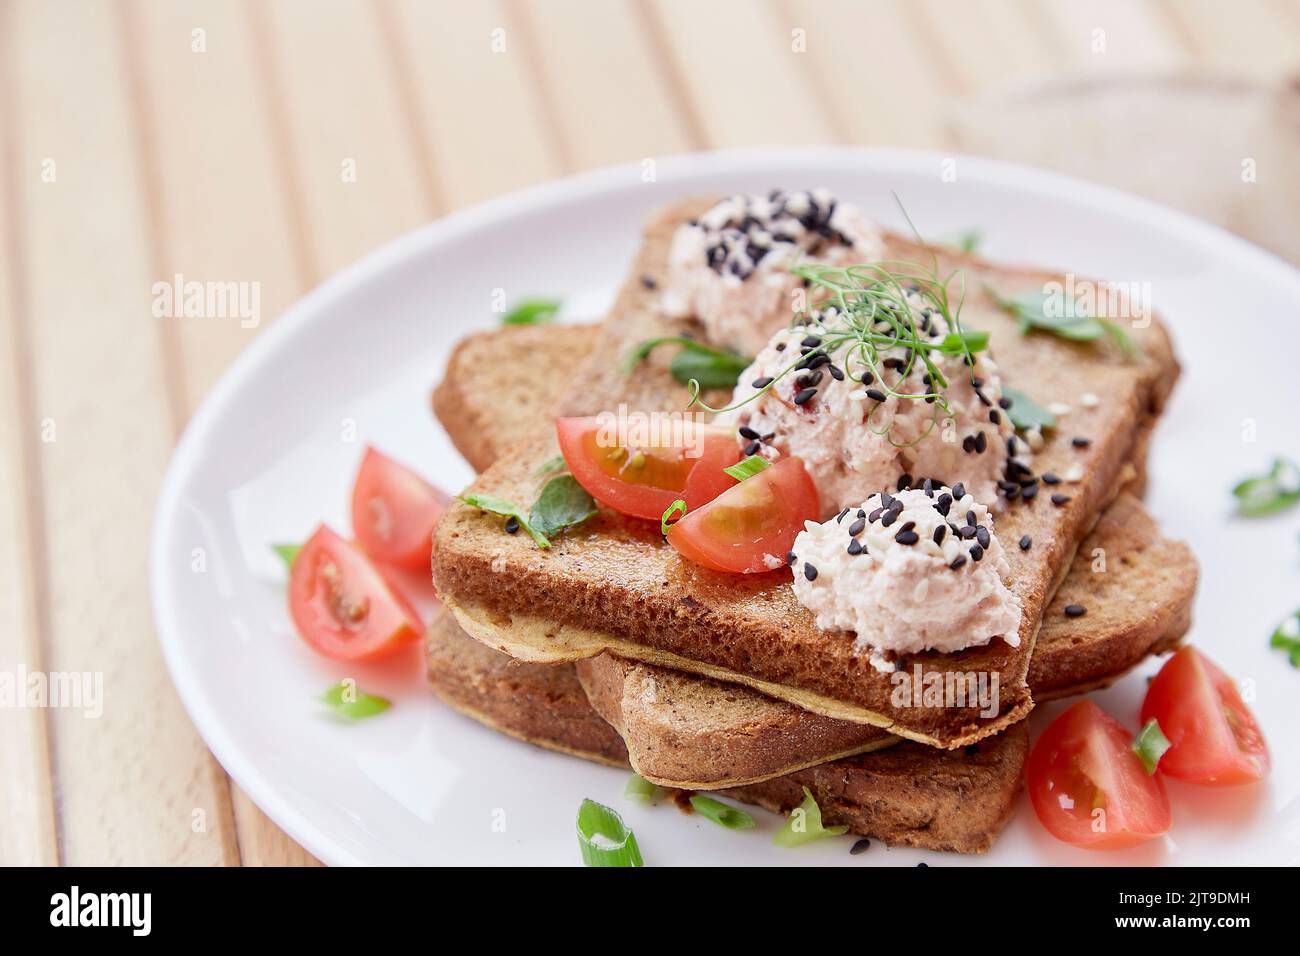 Sándwiches de temporada con pan de masa fermentada, tomates, hierbas, quinua y vegano sause. Desayuno vegetariano saludable. Foto de stock